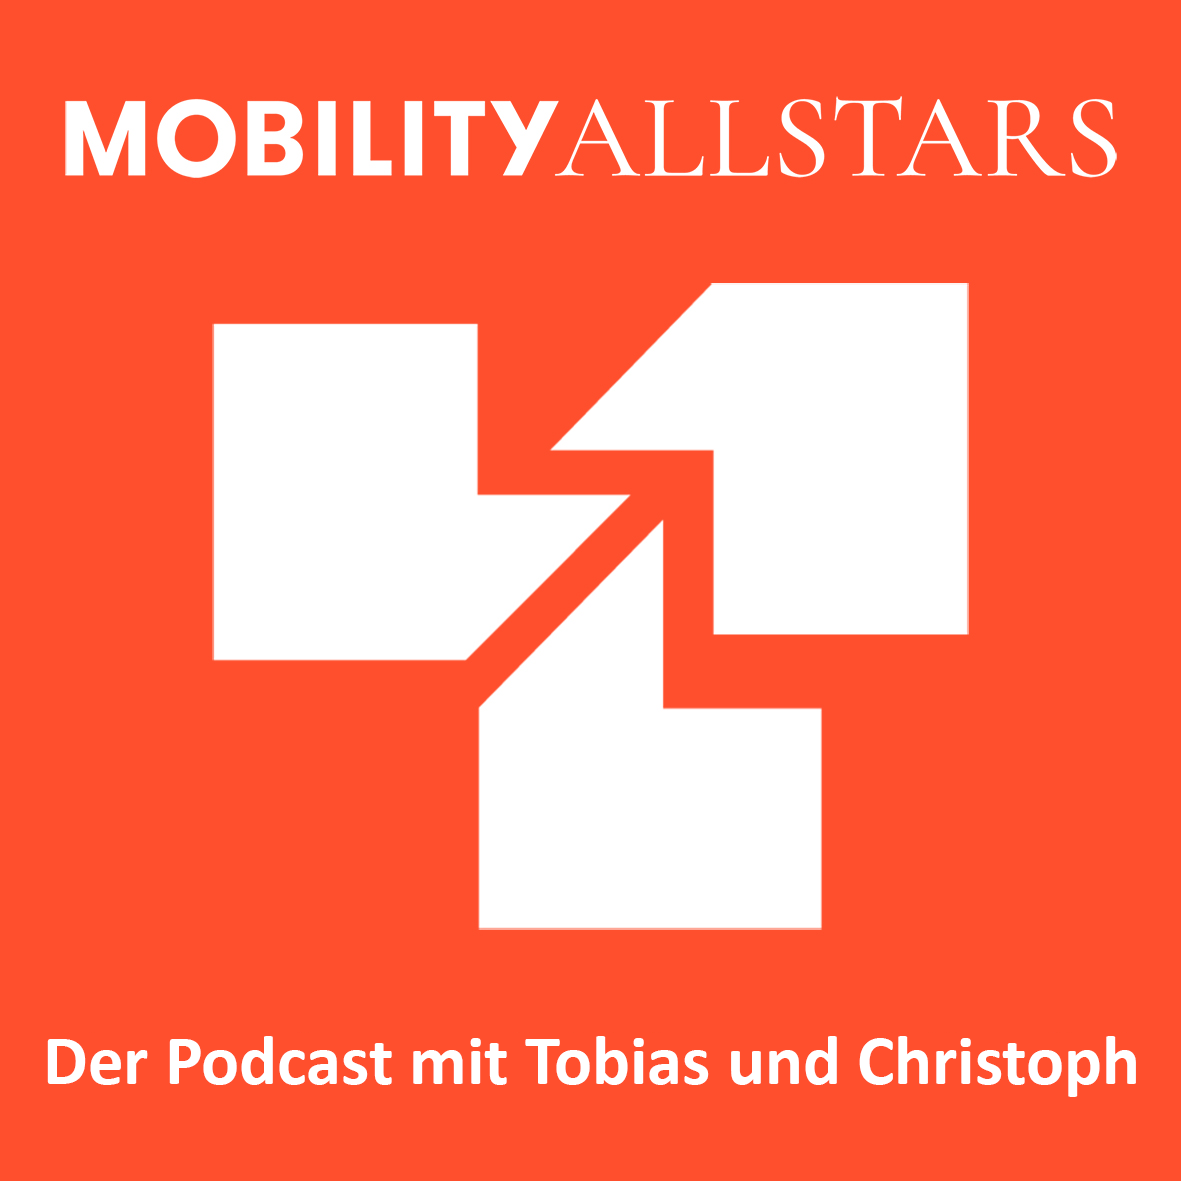 Interview: Flugchaos und Co. – Wie gute Schlichtung dabei helfen kann, die Mobilitätswende zu beschleunigen